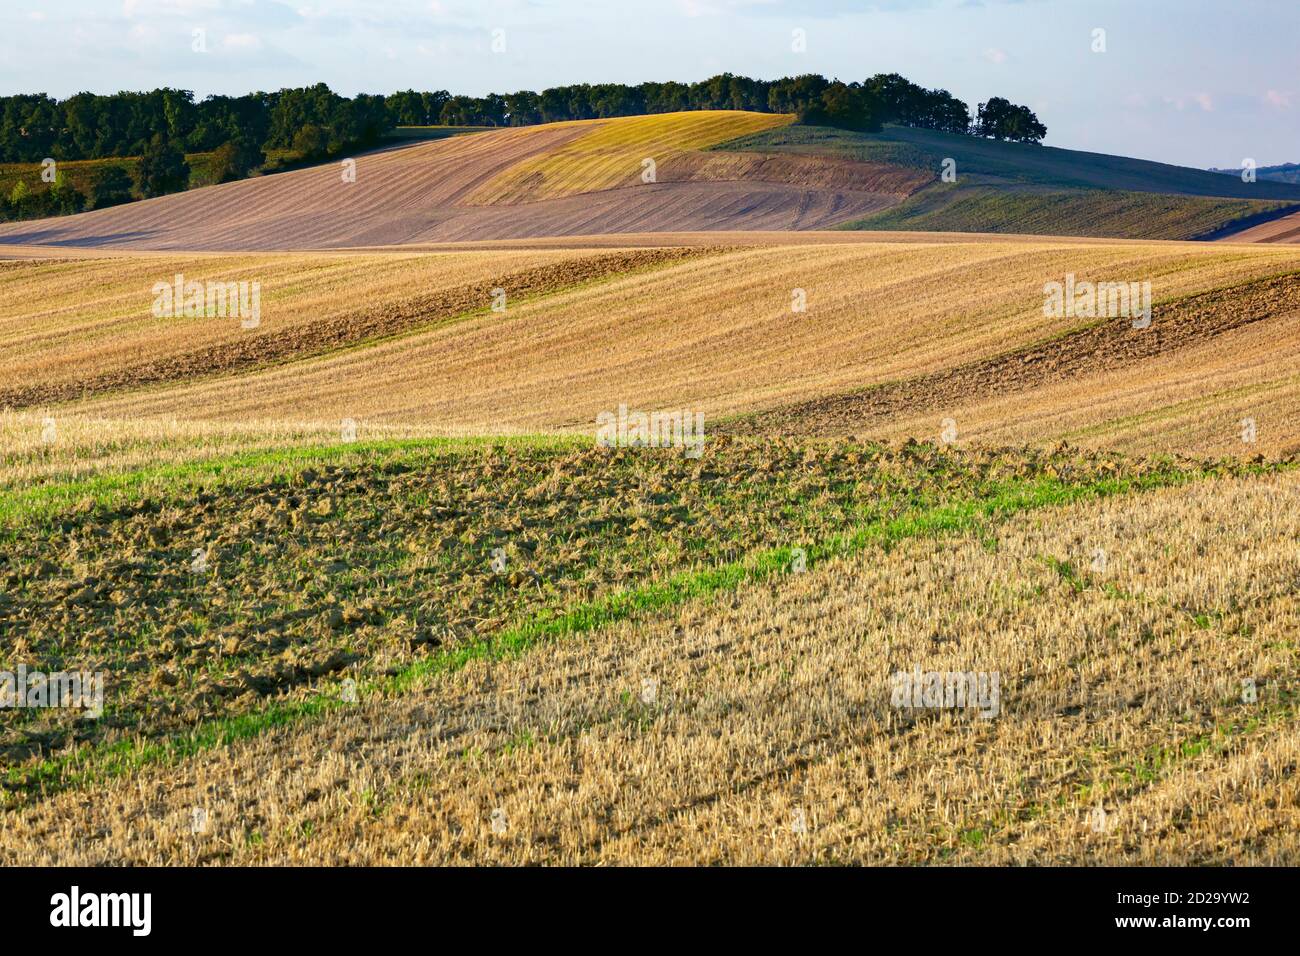 Un paisaje agrícola de colinas suavemente onduladas que son típicas de la región de Gers del suroeste de Francia. Foto de stock